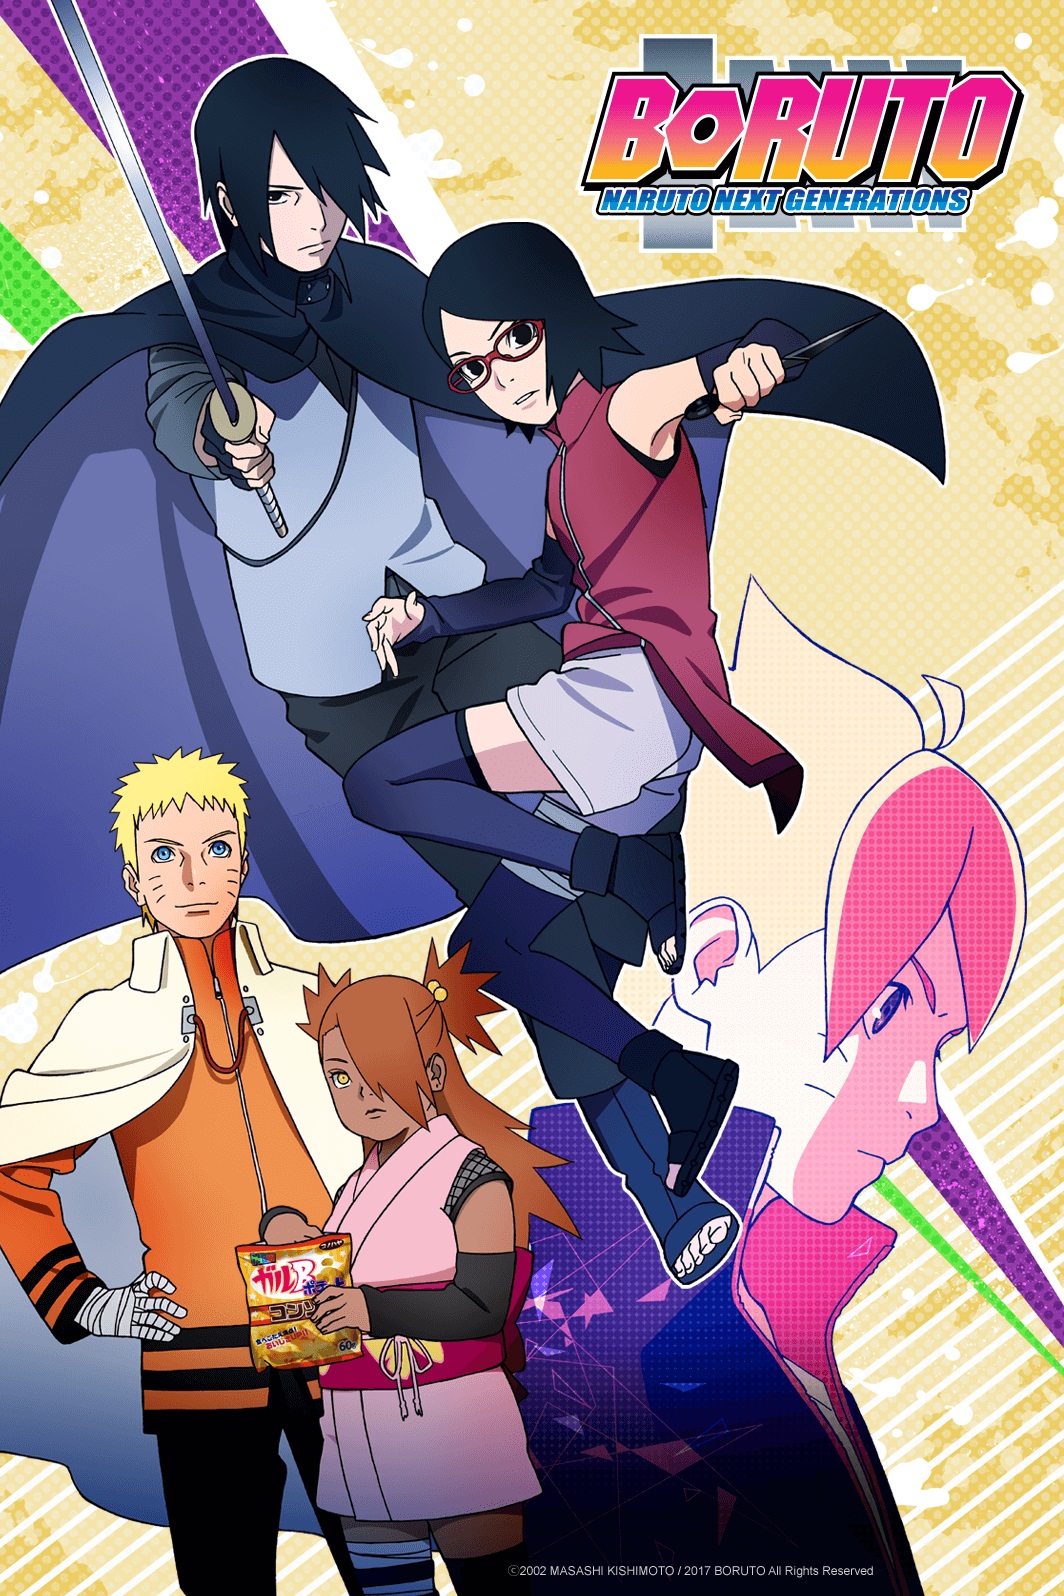 Boruto: Naruto Next, terá os primeiros 52 episódios dublados estreando hoje  (17) - MeUGamer